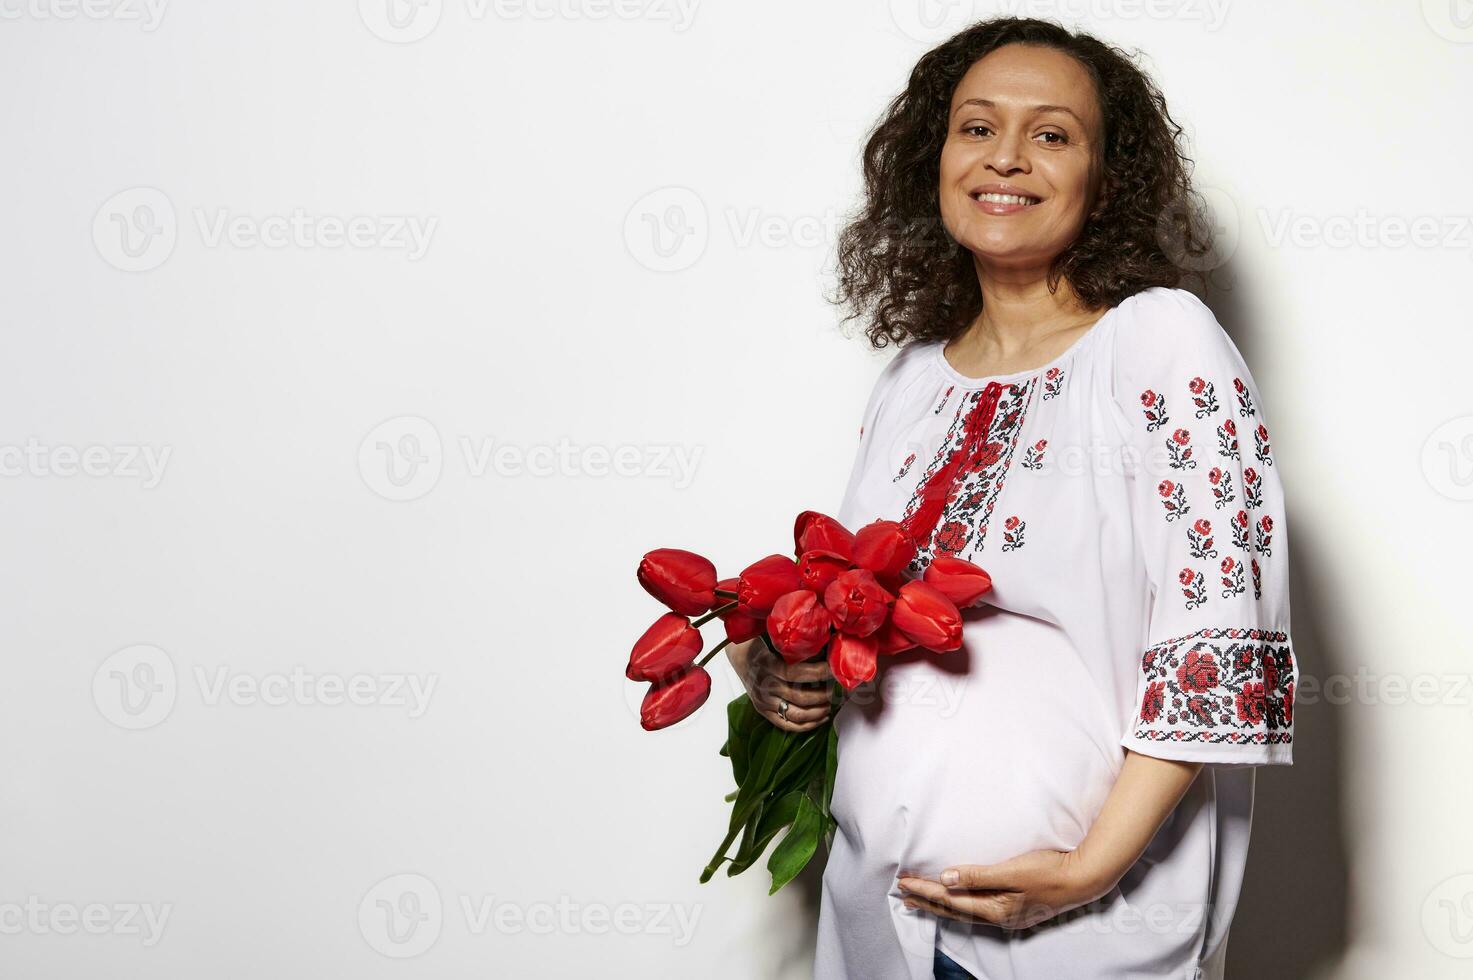 delizioso adulto incinta donna nel ucraino etnico ricamato camicia, sorridente, carezzevole gonfiarsi, in posa con rosso tulipani foto